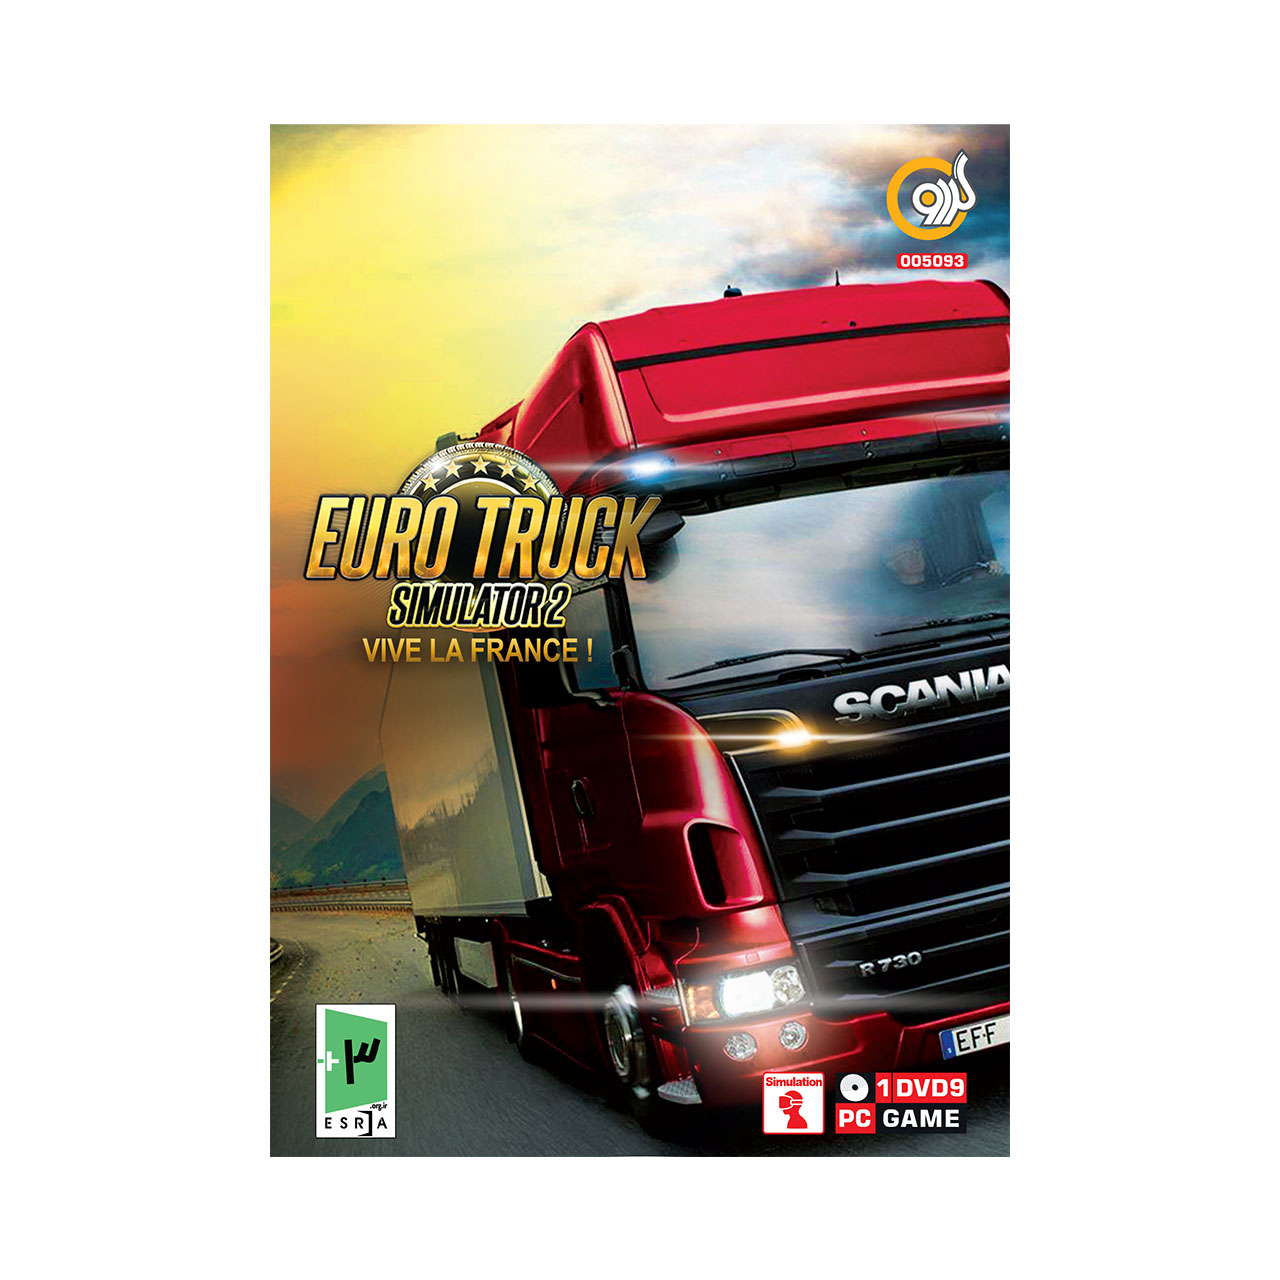 بازی Euro Truck Simulator 2 Vive la France مخصوص PC